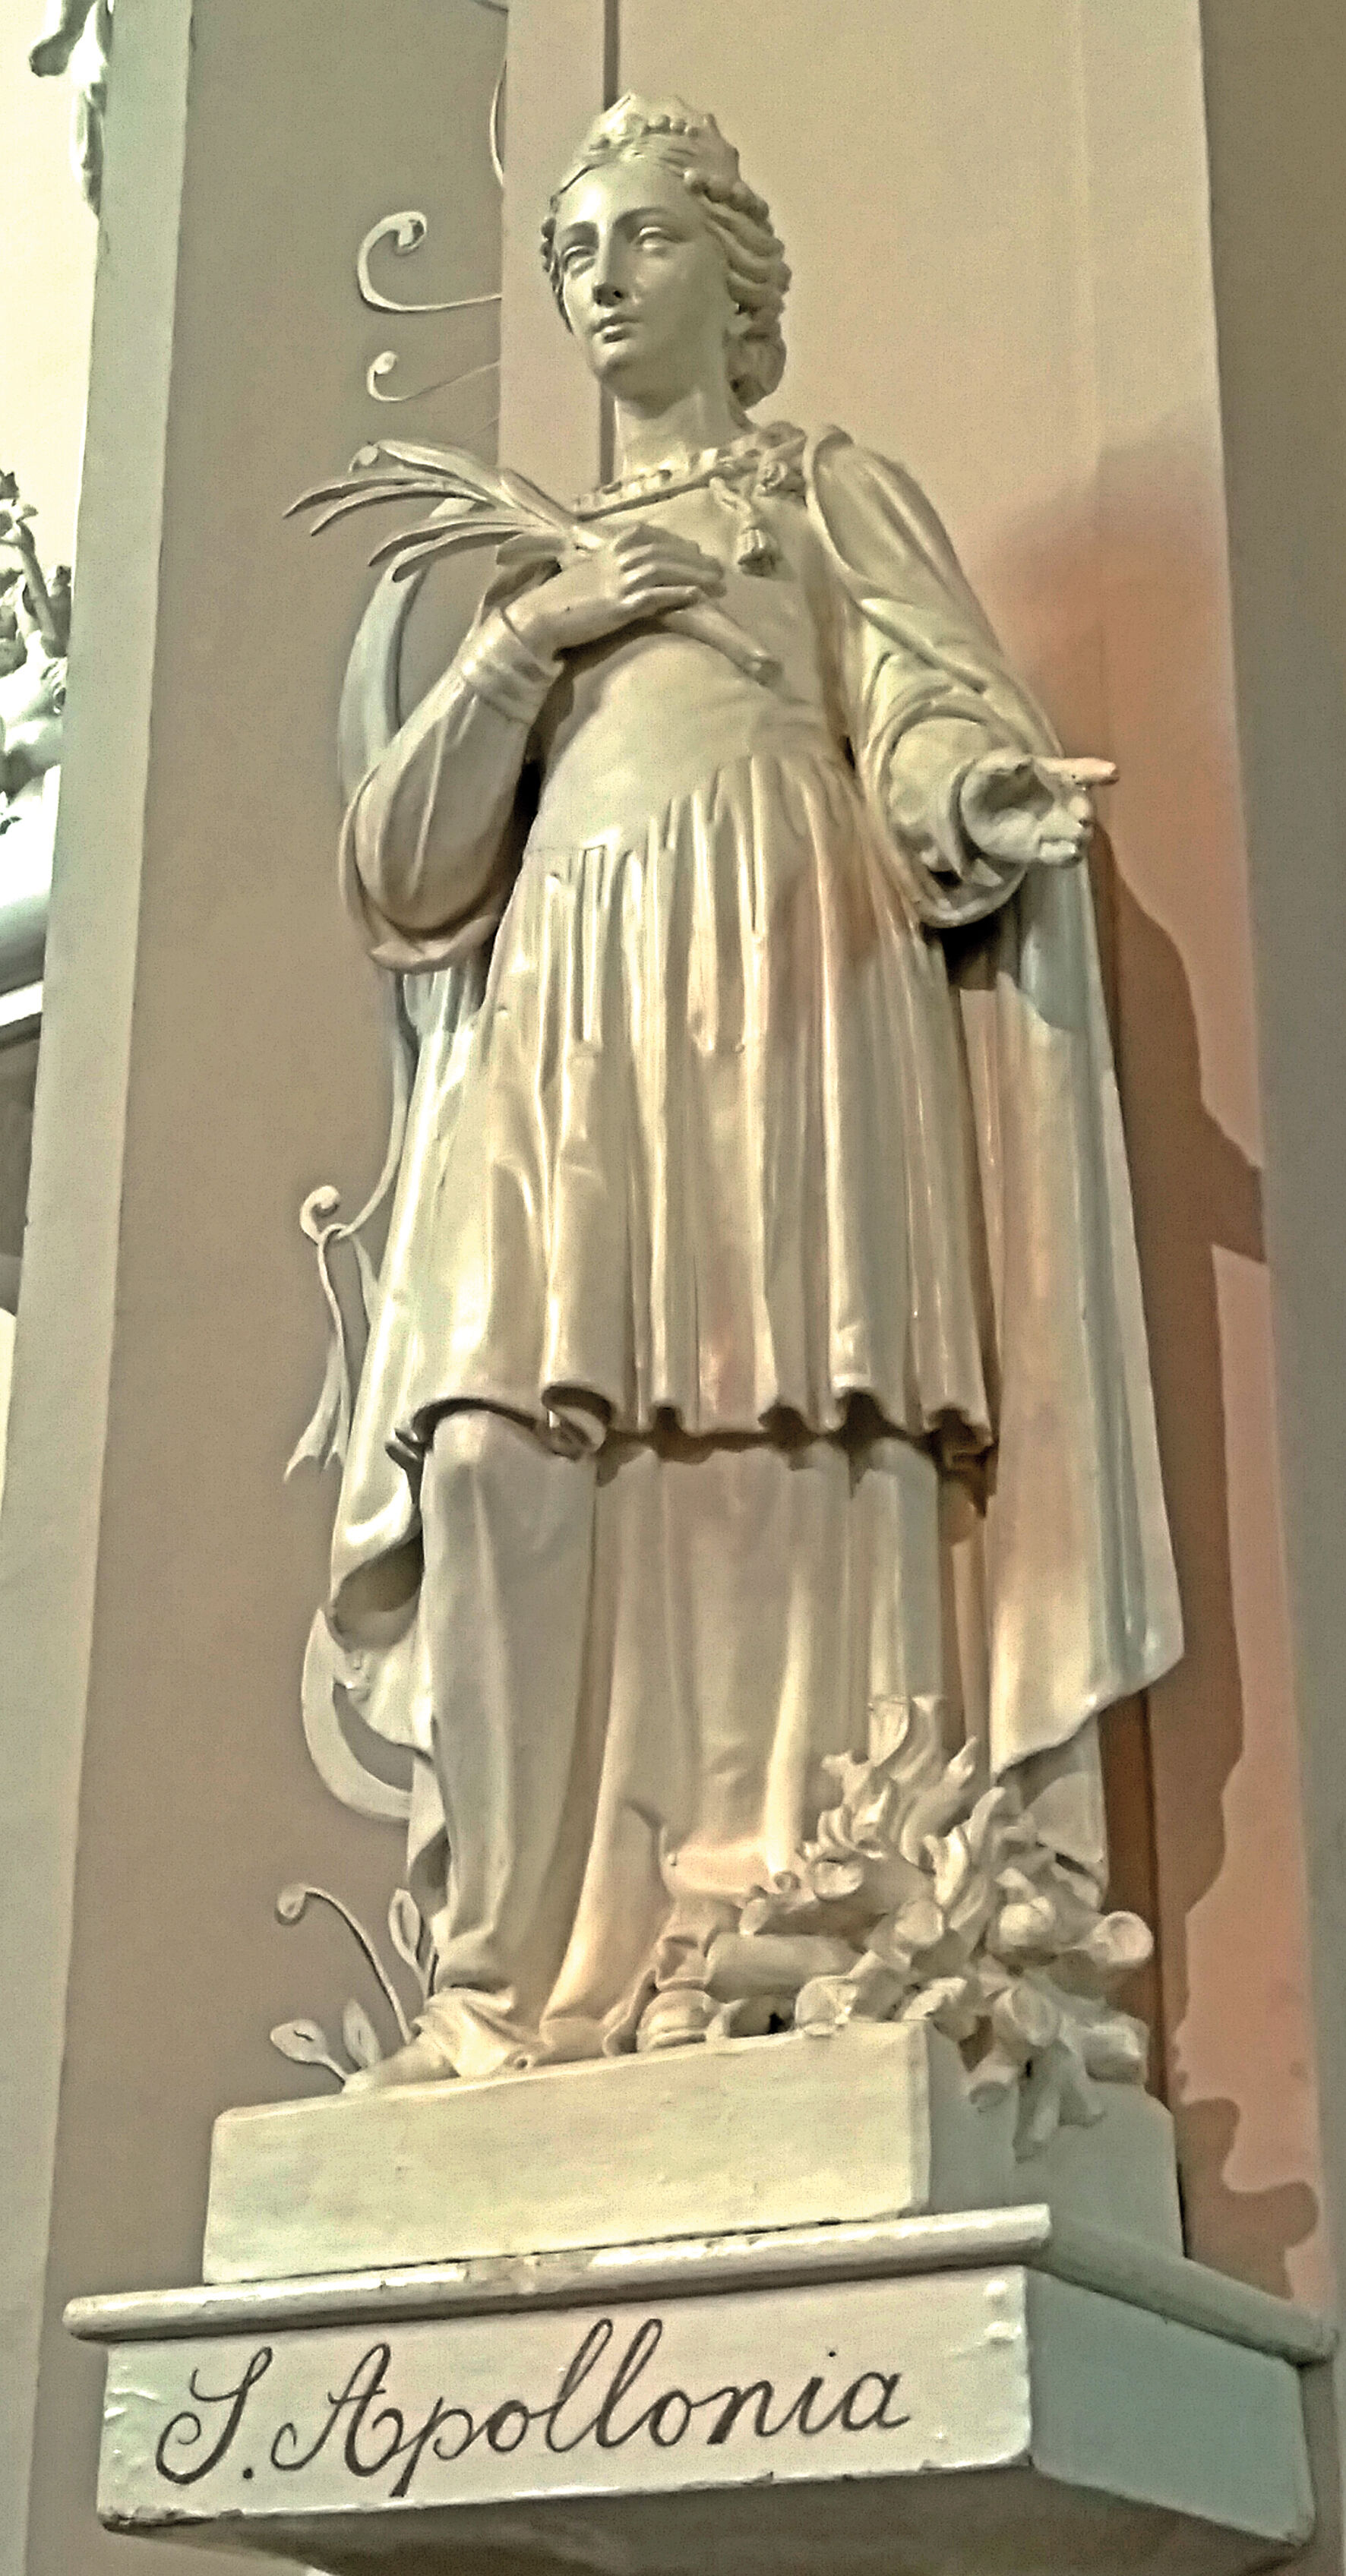 Achter in de Wittemse kloosterkerk staat ook een beeld van de H.Apollonia, helaas zonder nijptang...